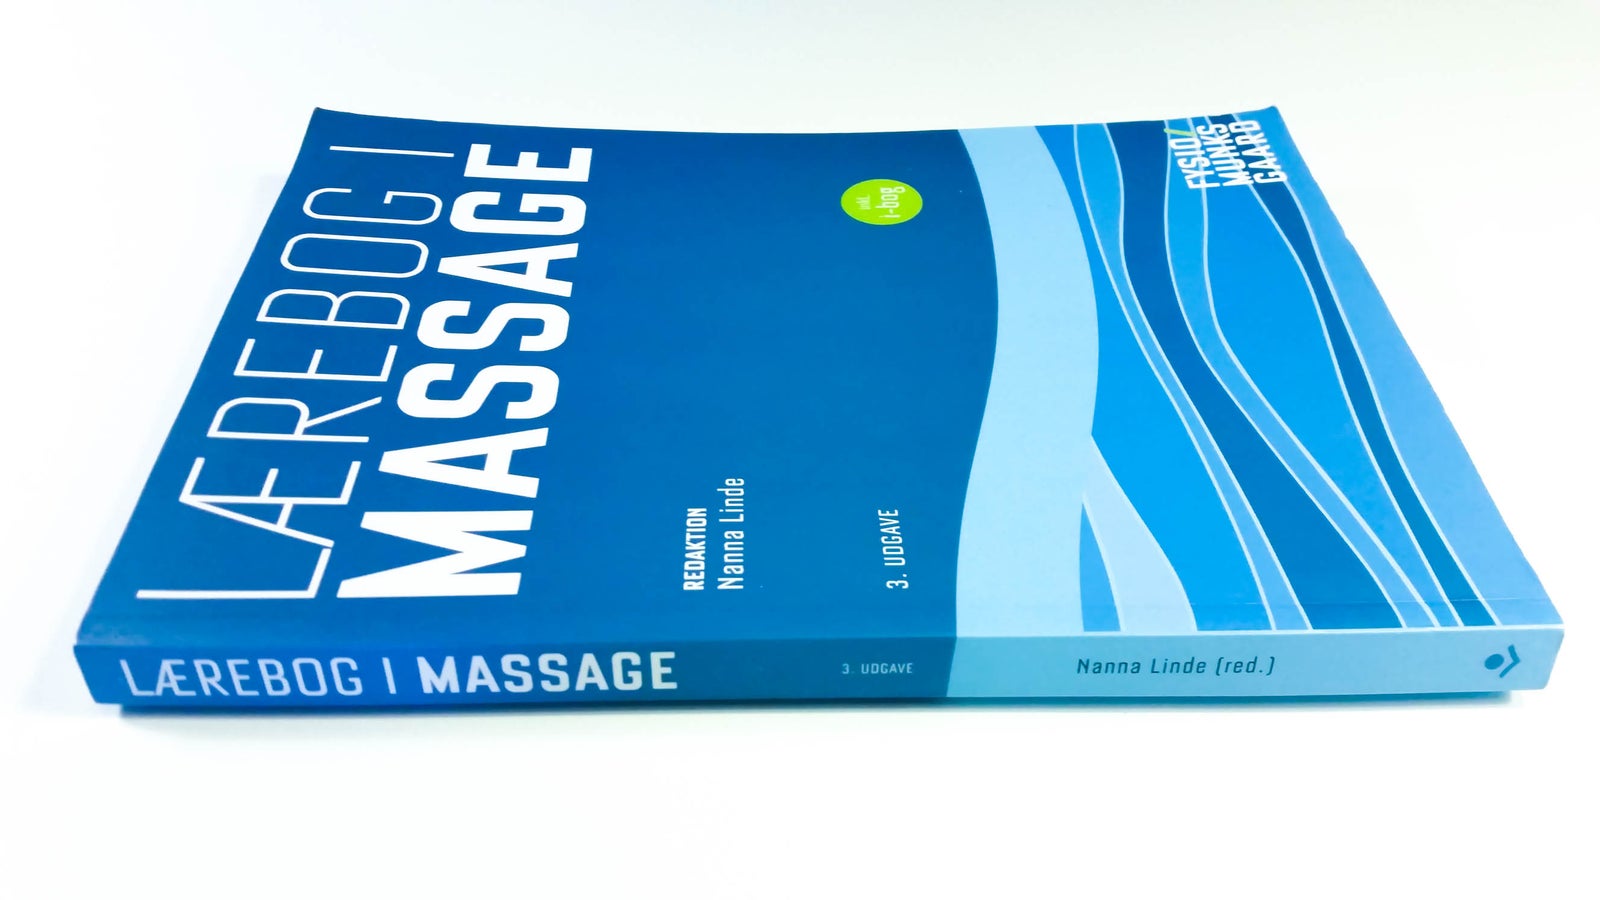 Lærebog i massage, Nanna Linde, år 2016